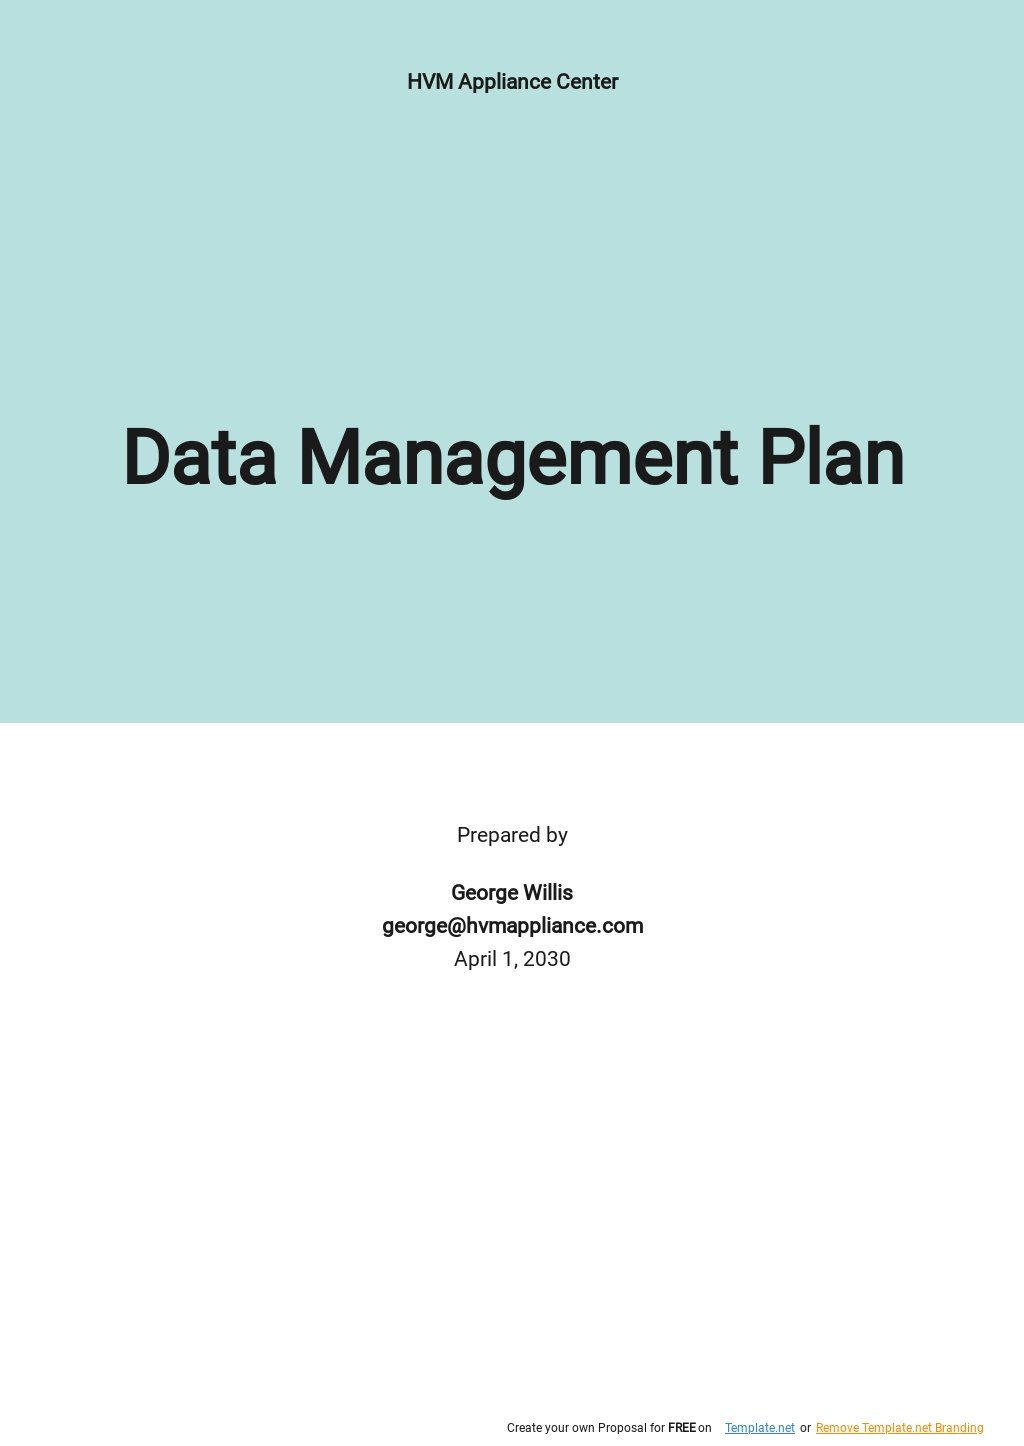 Data Management Plan Template.jpe